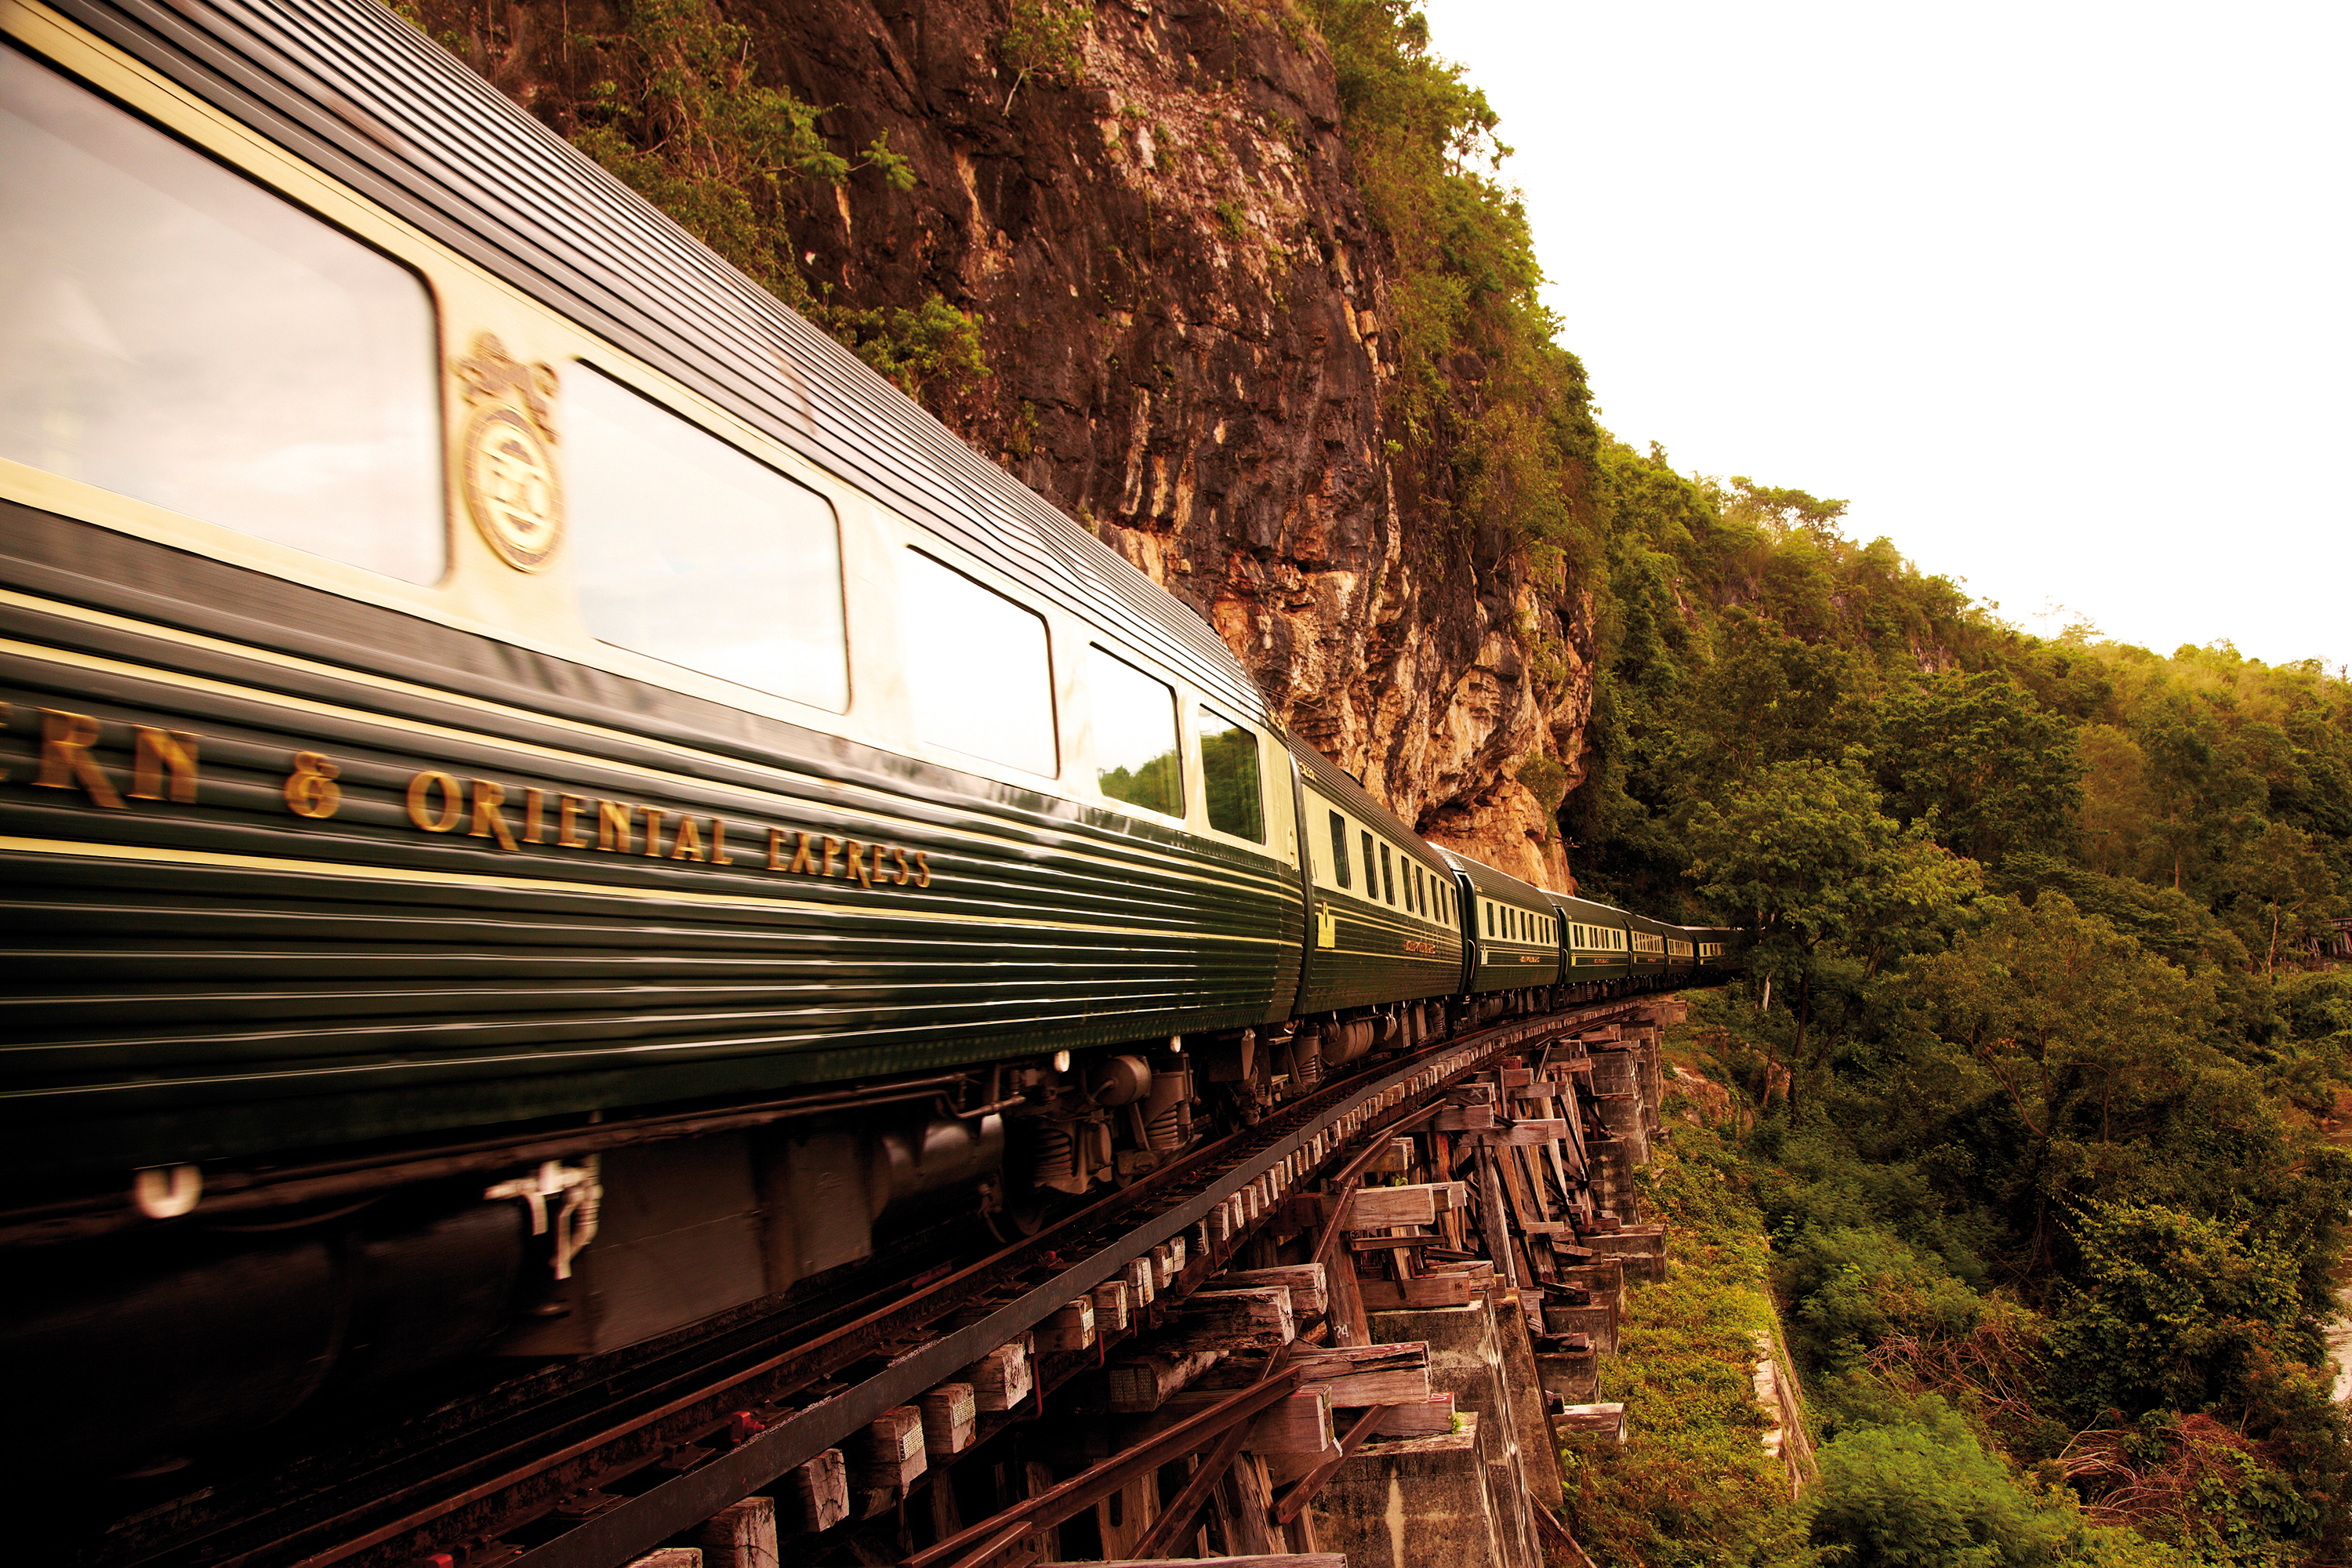 Купить тур на поезде. Поезд Eastern & oriental Express. Eastern & oriental Express (Таиланд / Сингапур). Туристический поезд Сингапур-Тайланд. Orient Express поезд.